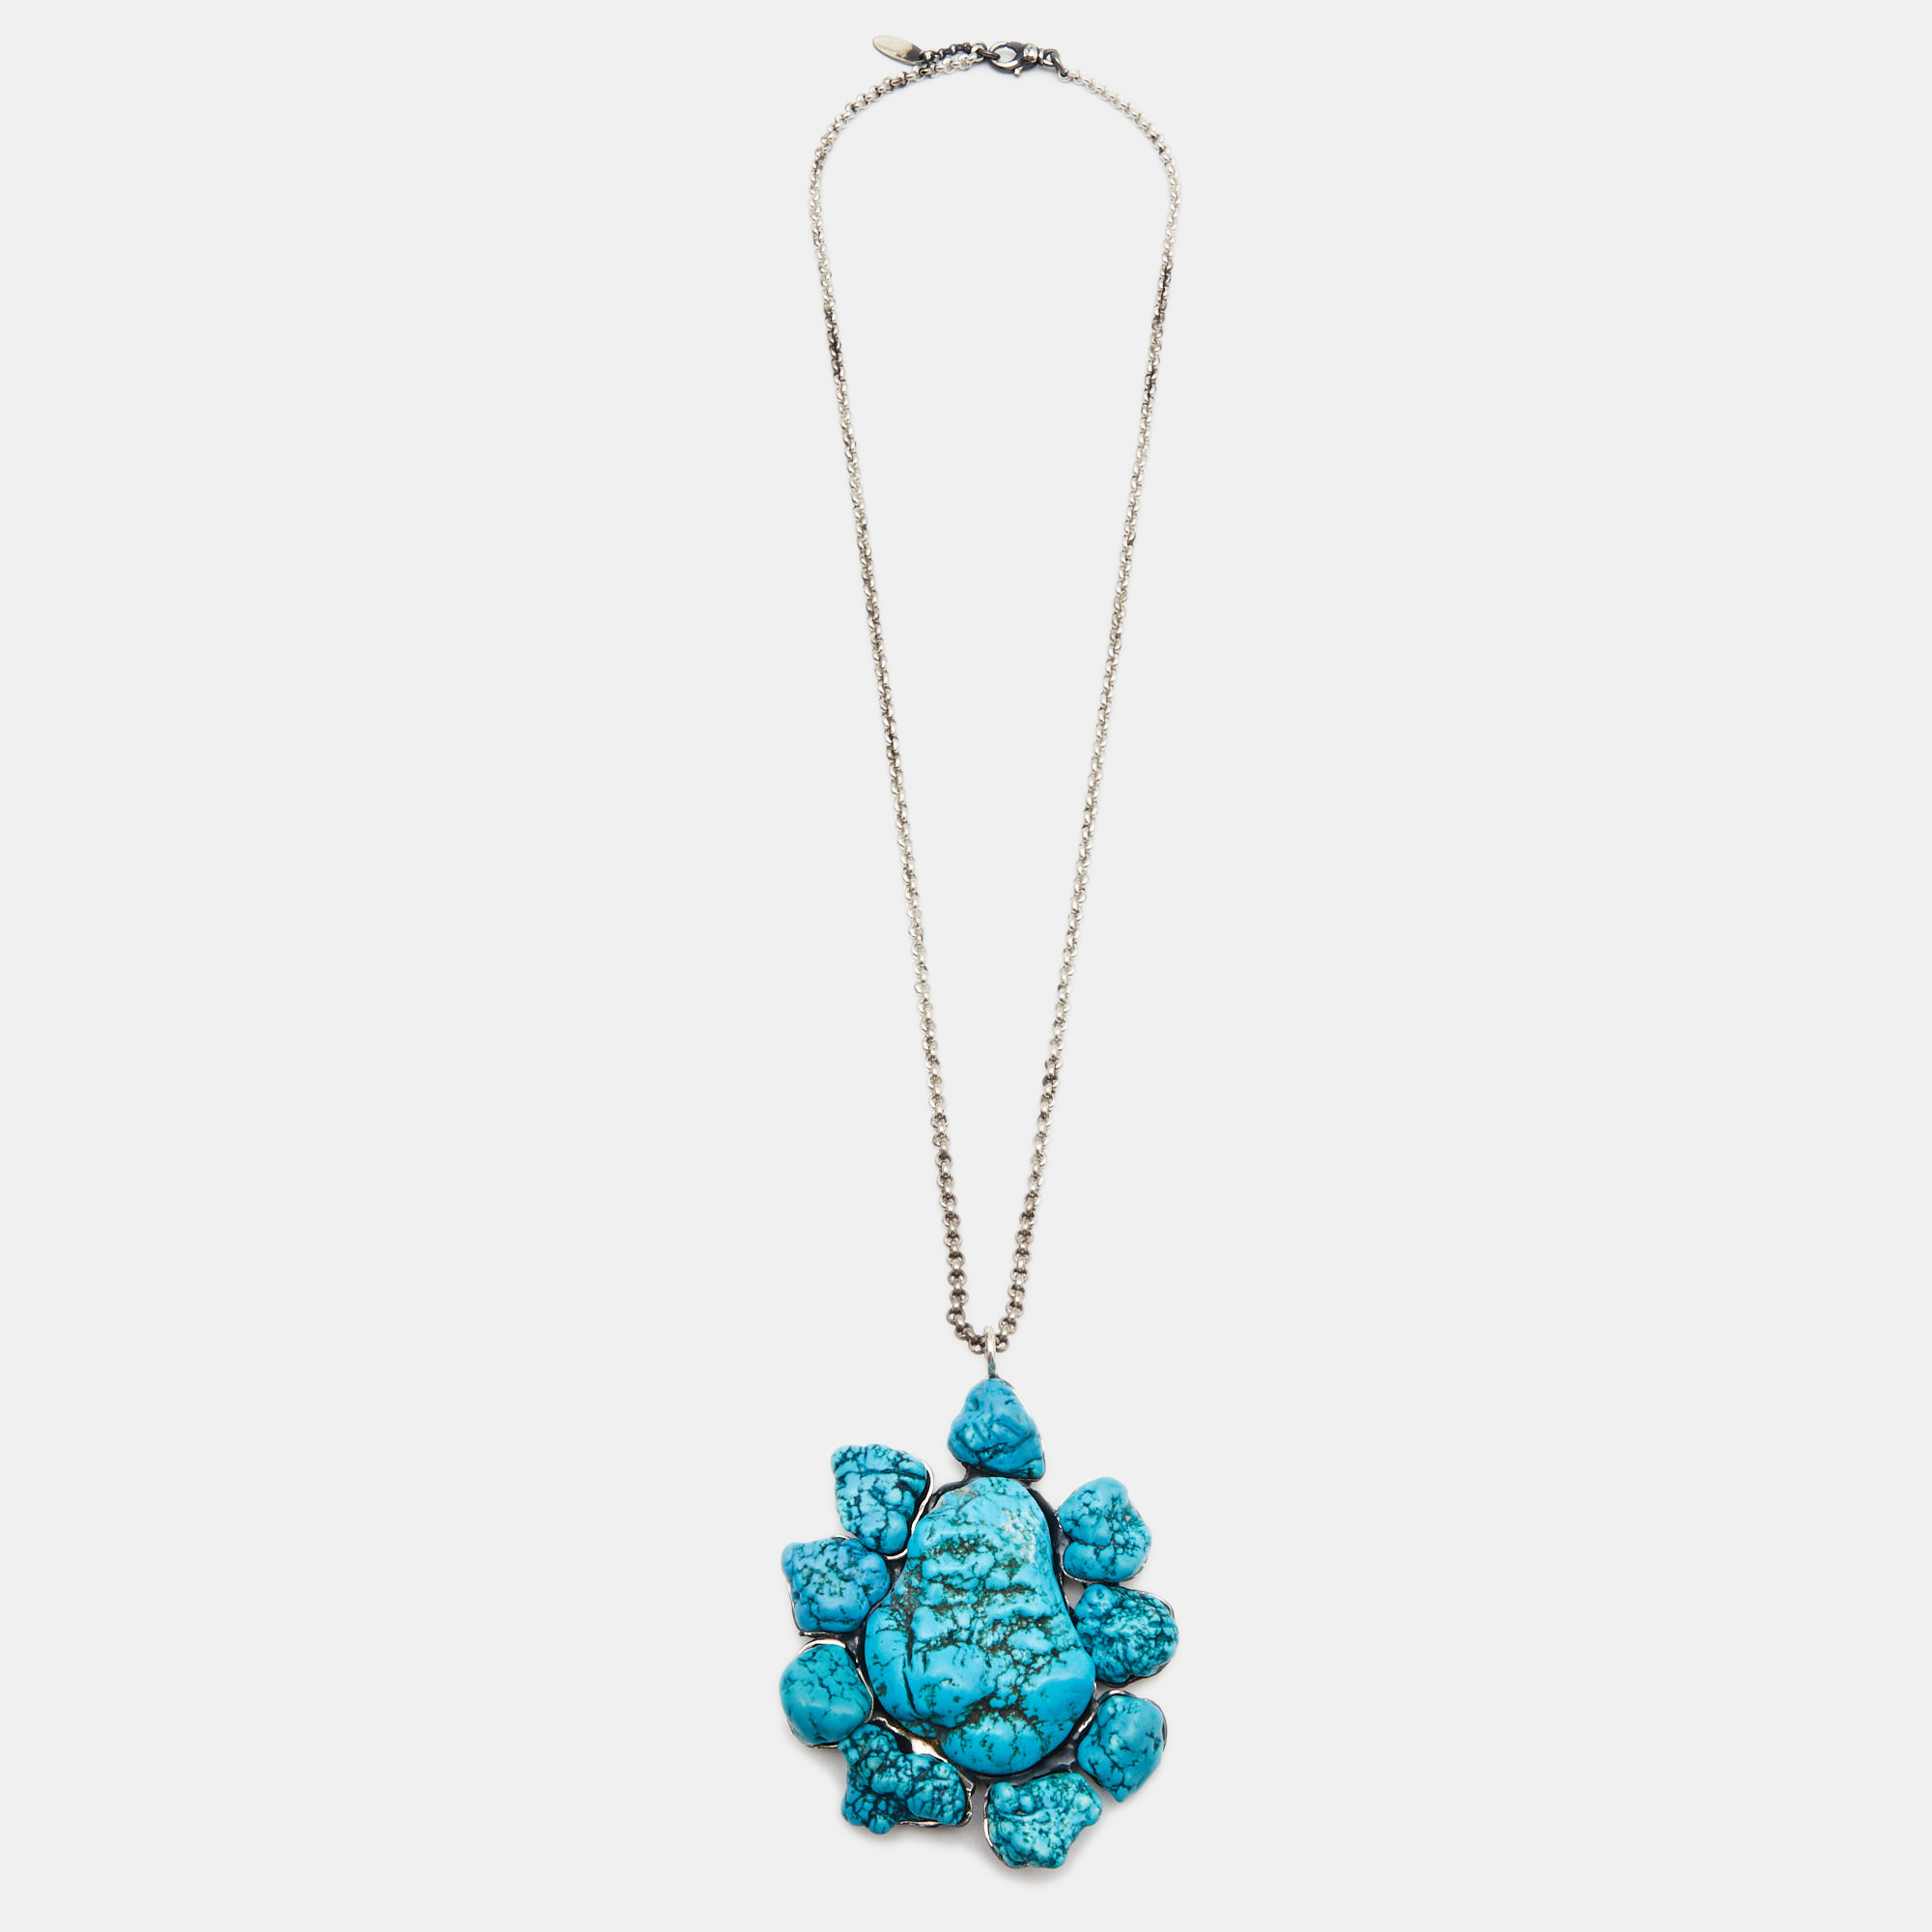 

Roberto Cavalli Turquoise Color Stone Silver Tone Pendant Necklace